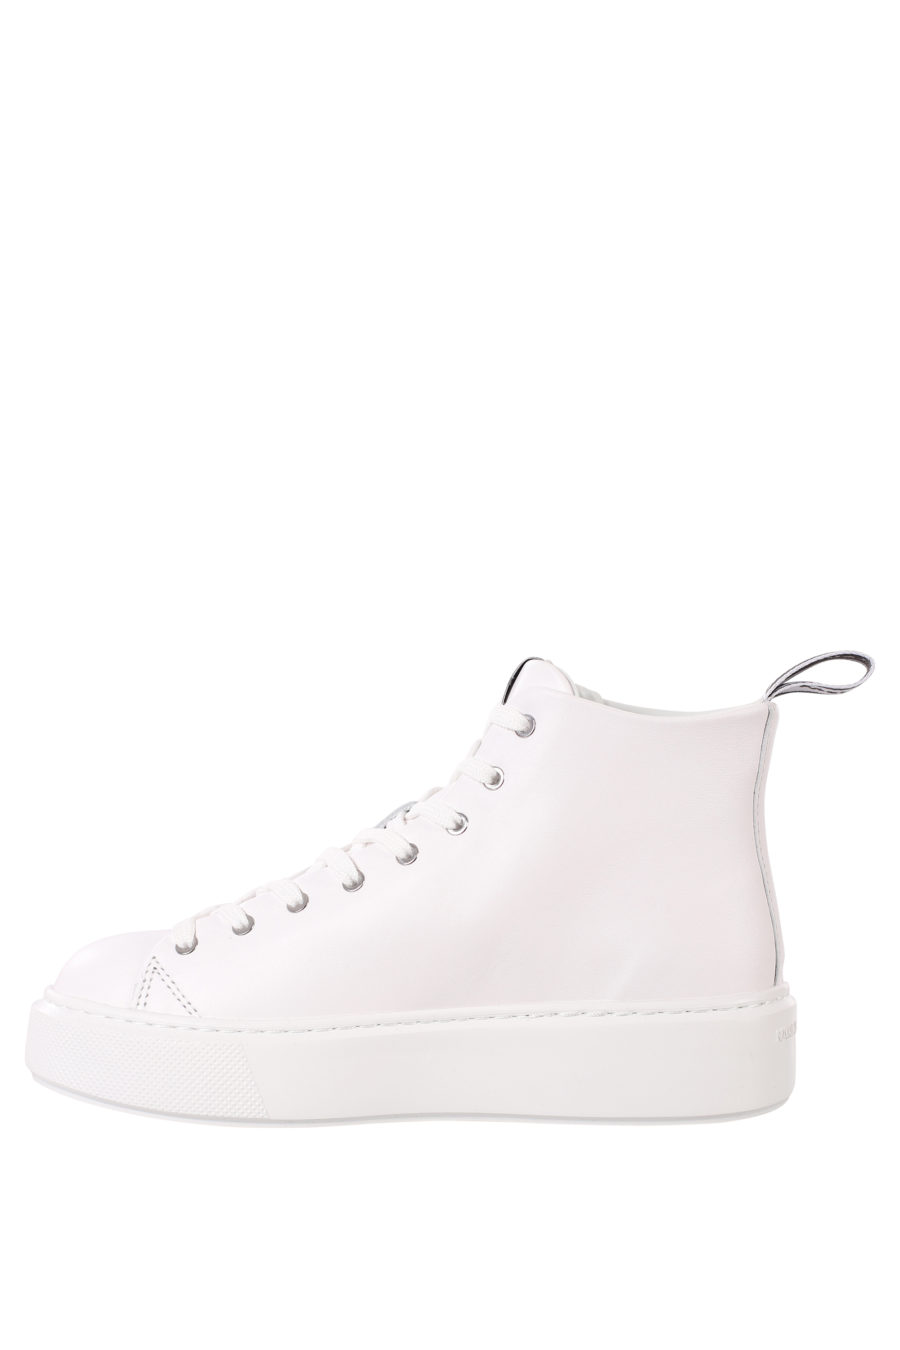 Zapatillas blancas estilo botin con maxilogo blanco de goma - IMG 0389